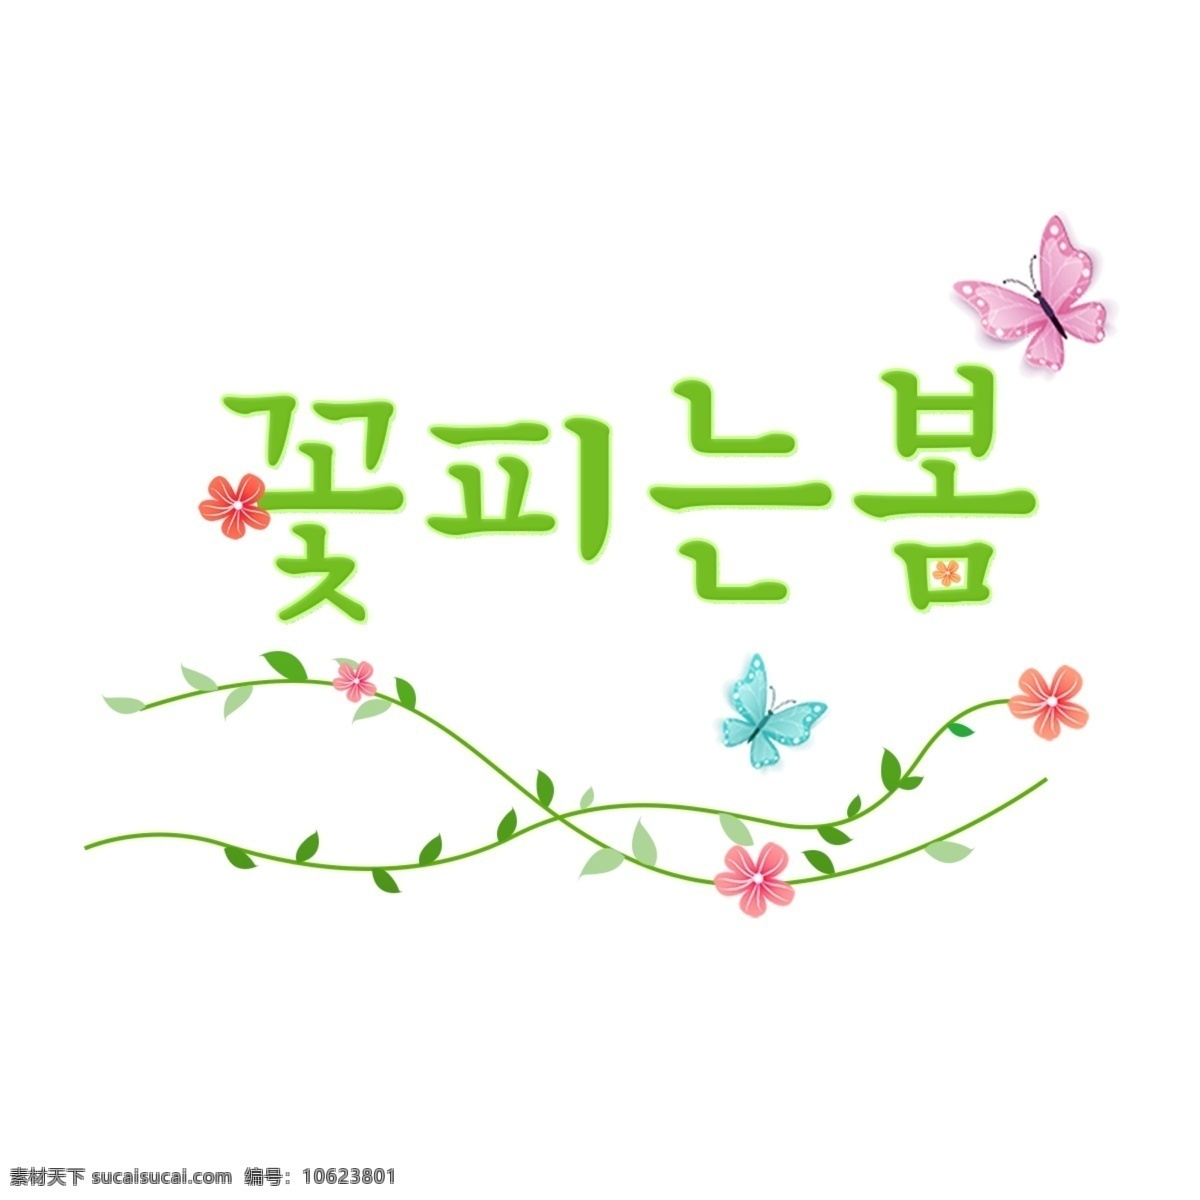 春天 韩国 花朵 绽放 韩国人 字形 韩国字体 现场 盛开 花的 弹簧 greenbricks